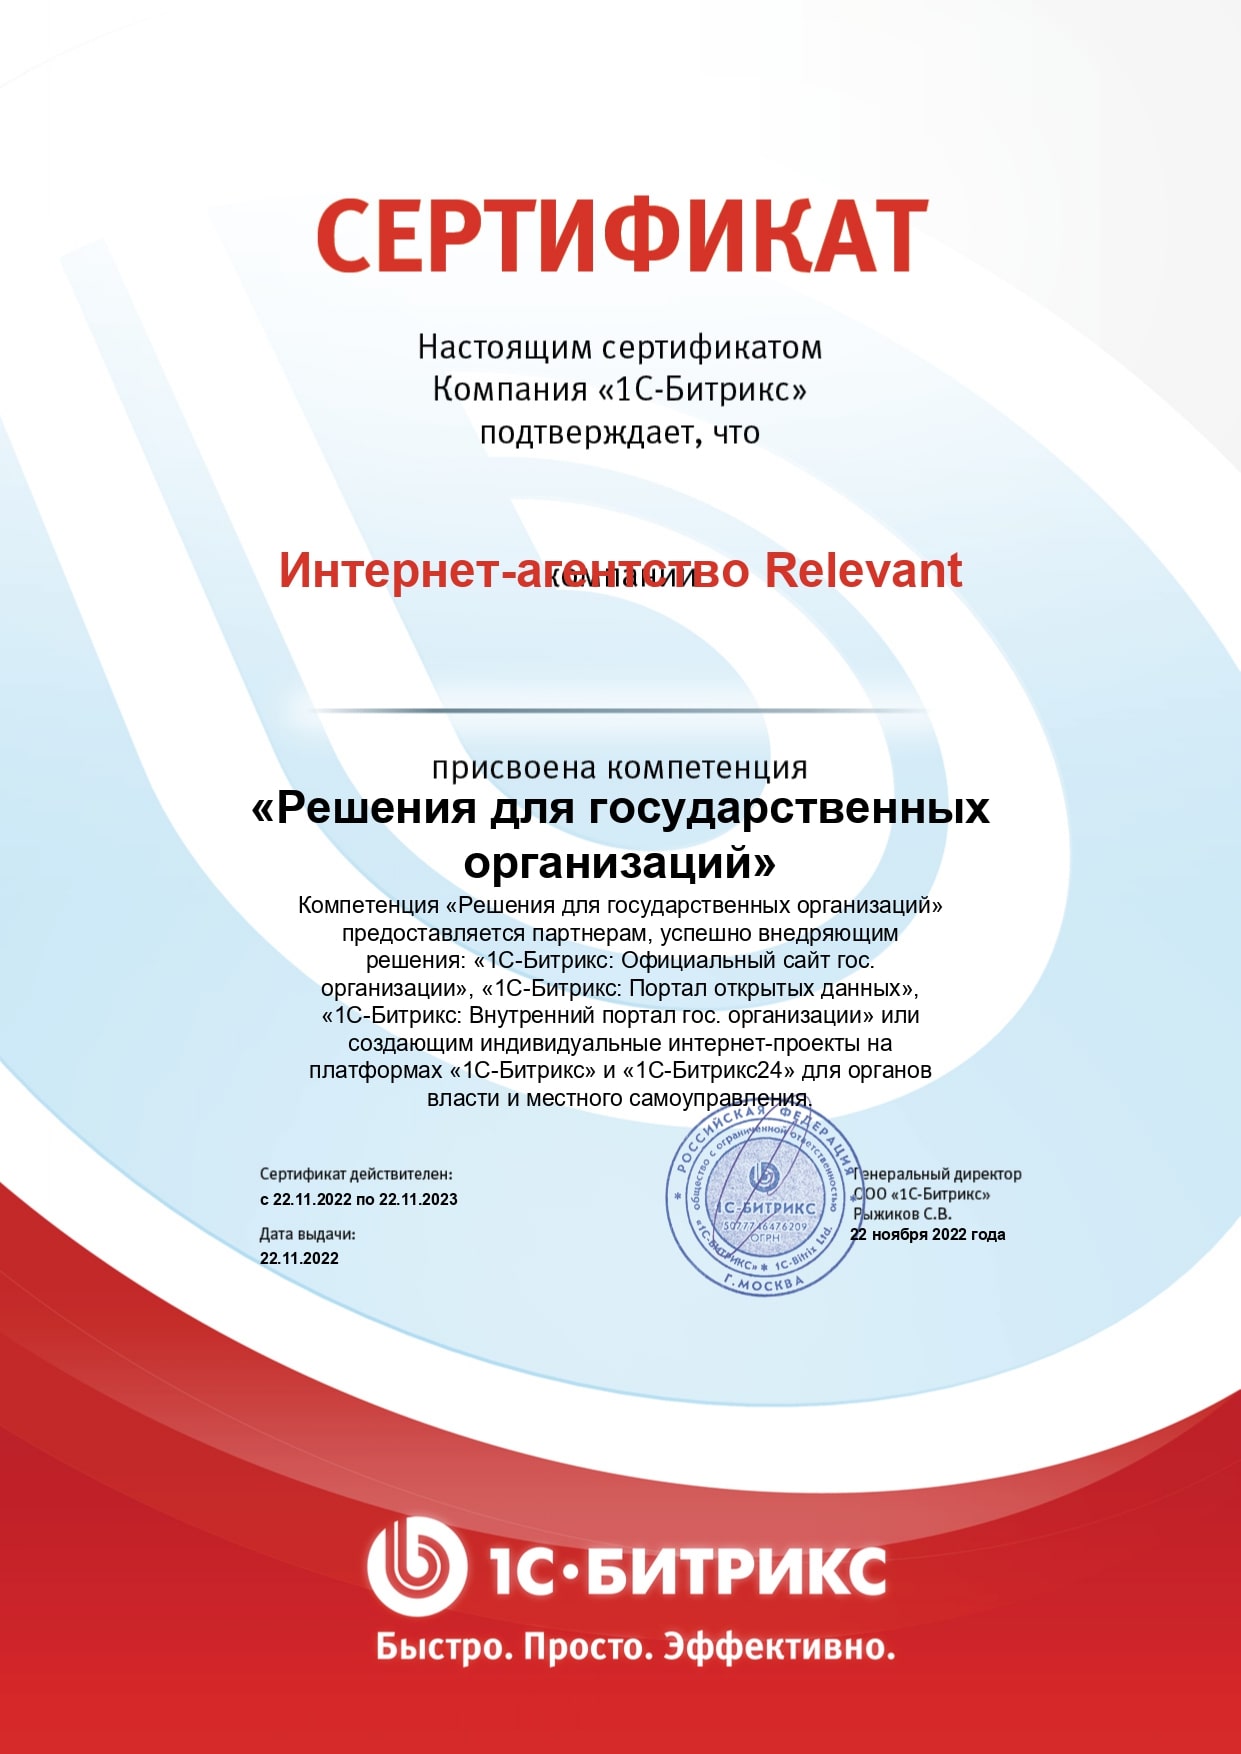 Сертификат о присвоении компетенции "Решение для государственных организаций"